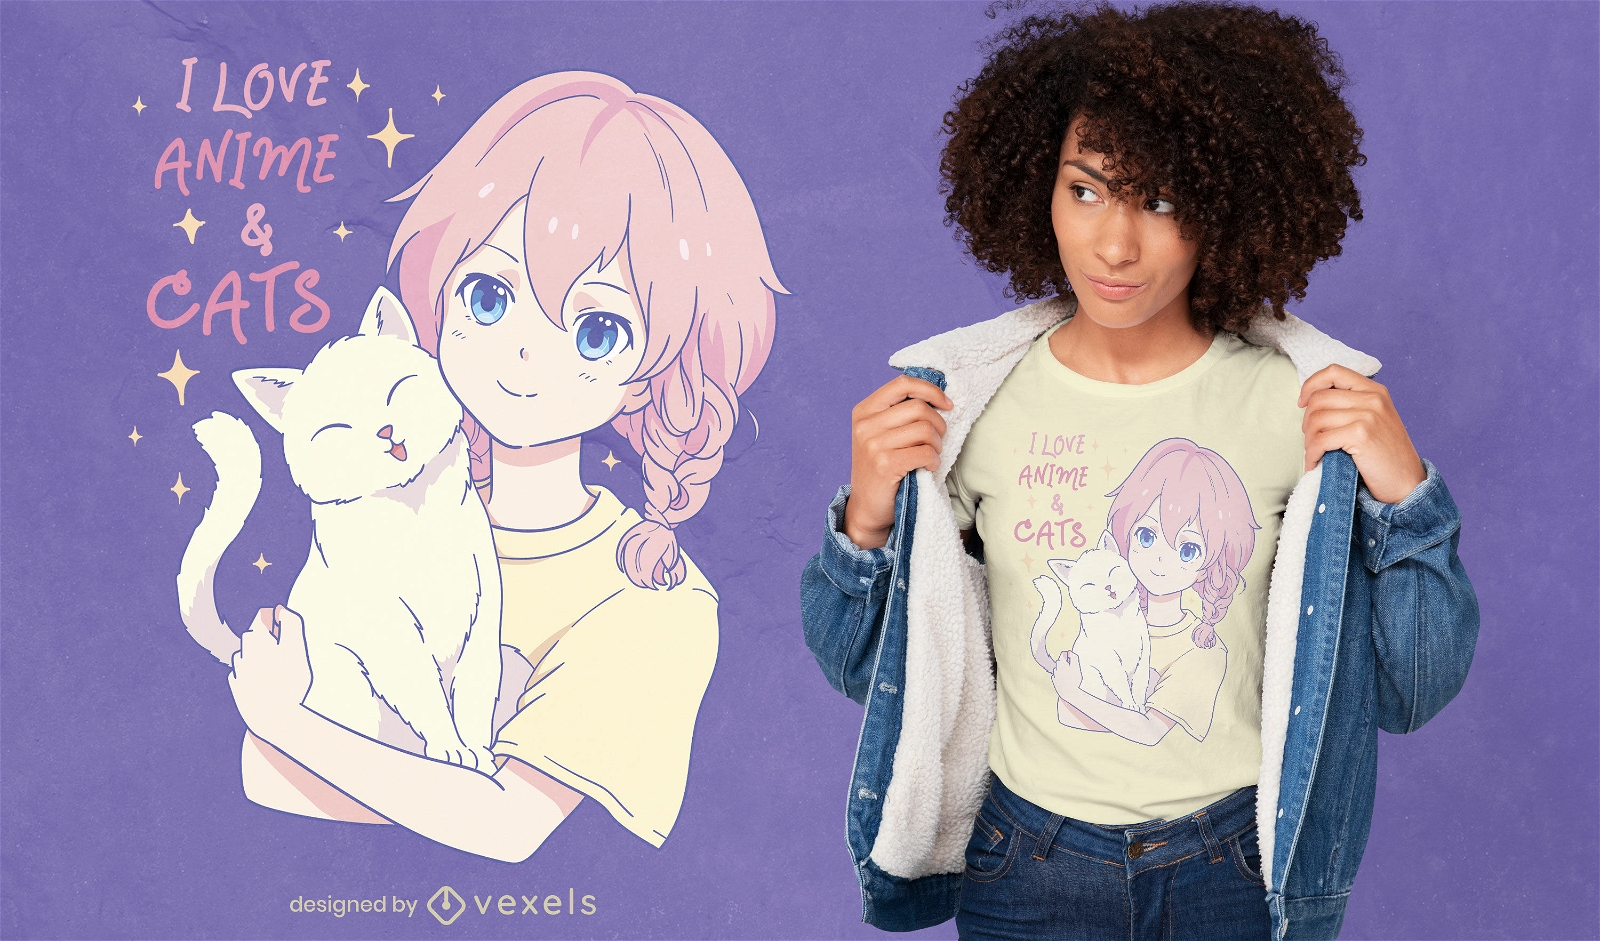 Diseño de camiseta de chica amante del gato y el anime.